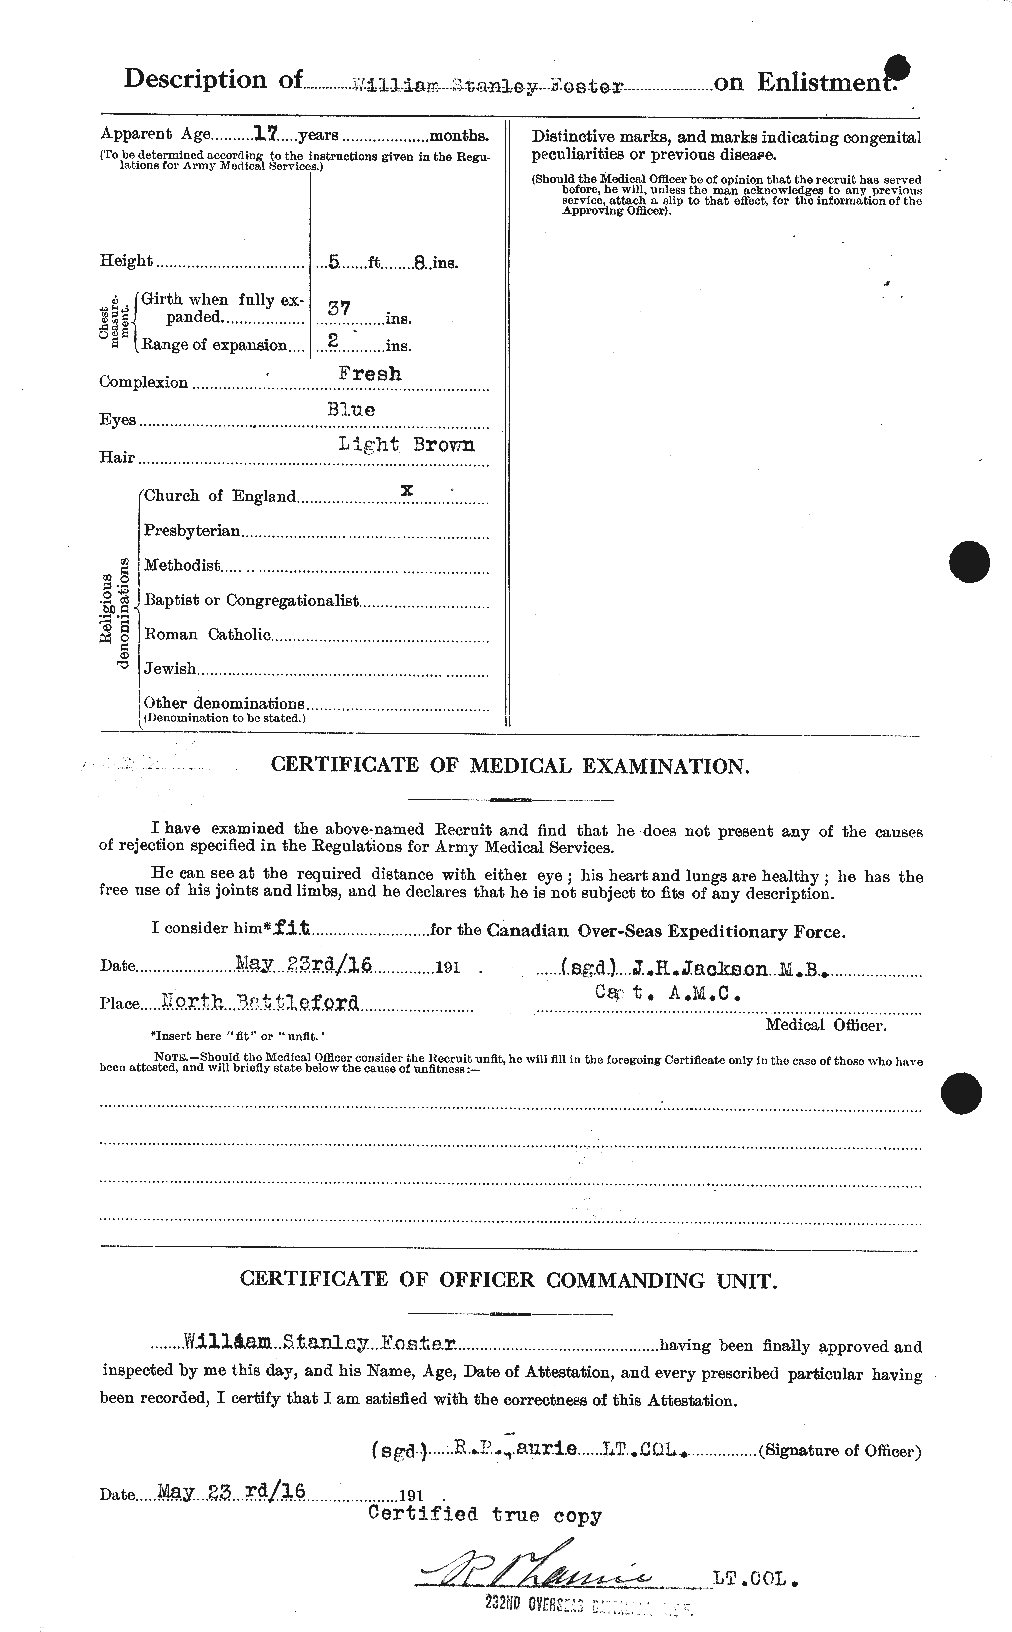 Dossiers du Personnel de la Première Guerre mondiale - CEC 328773b